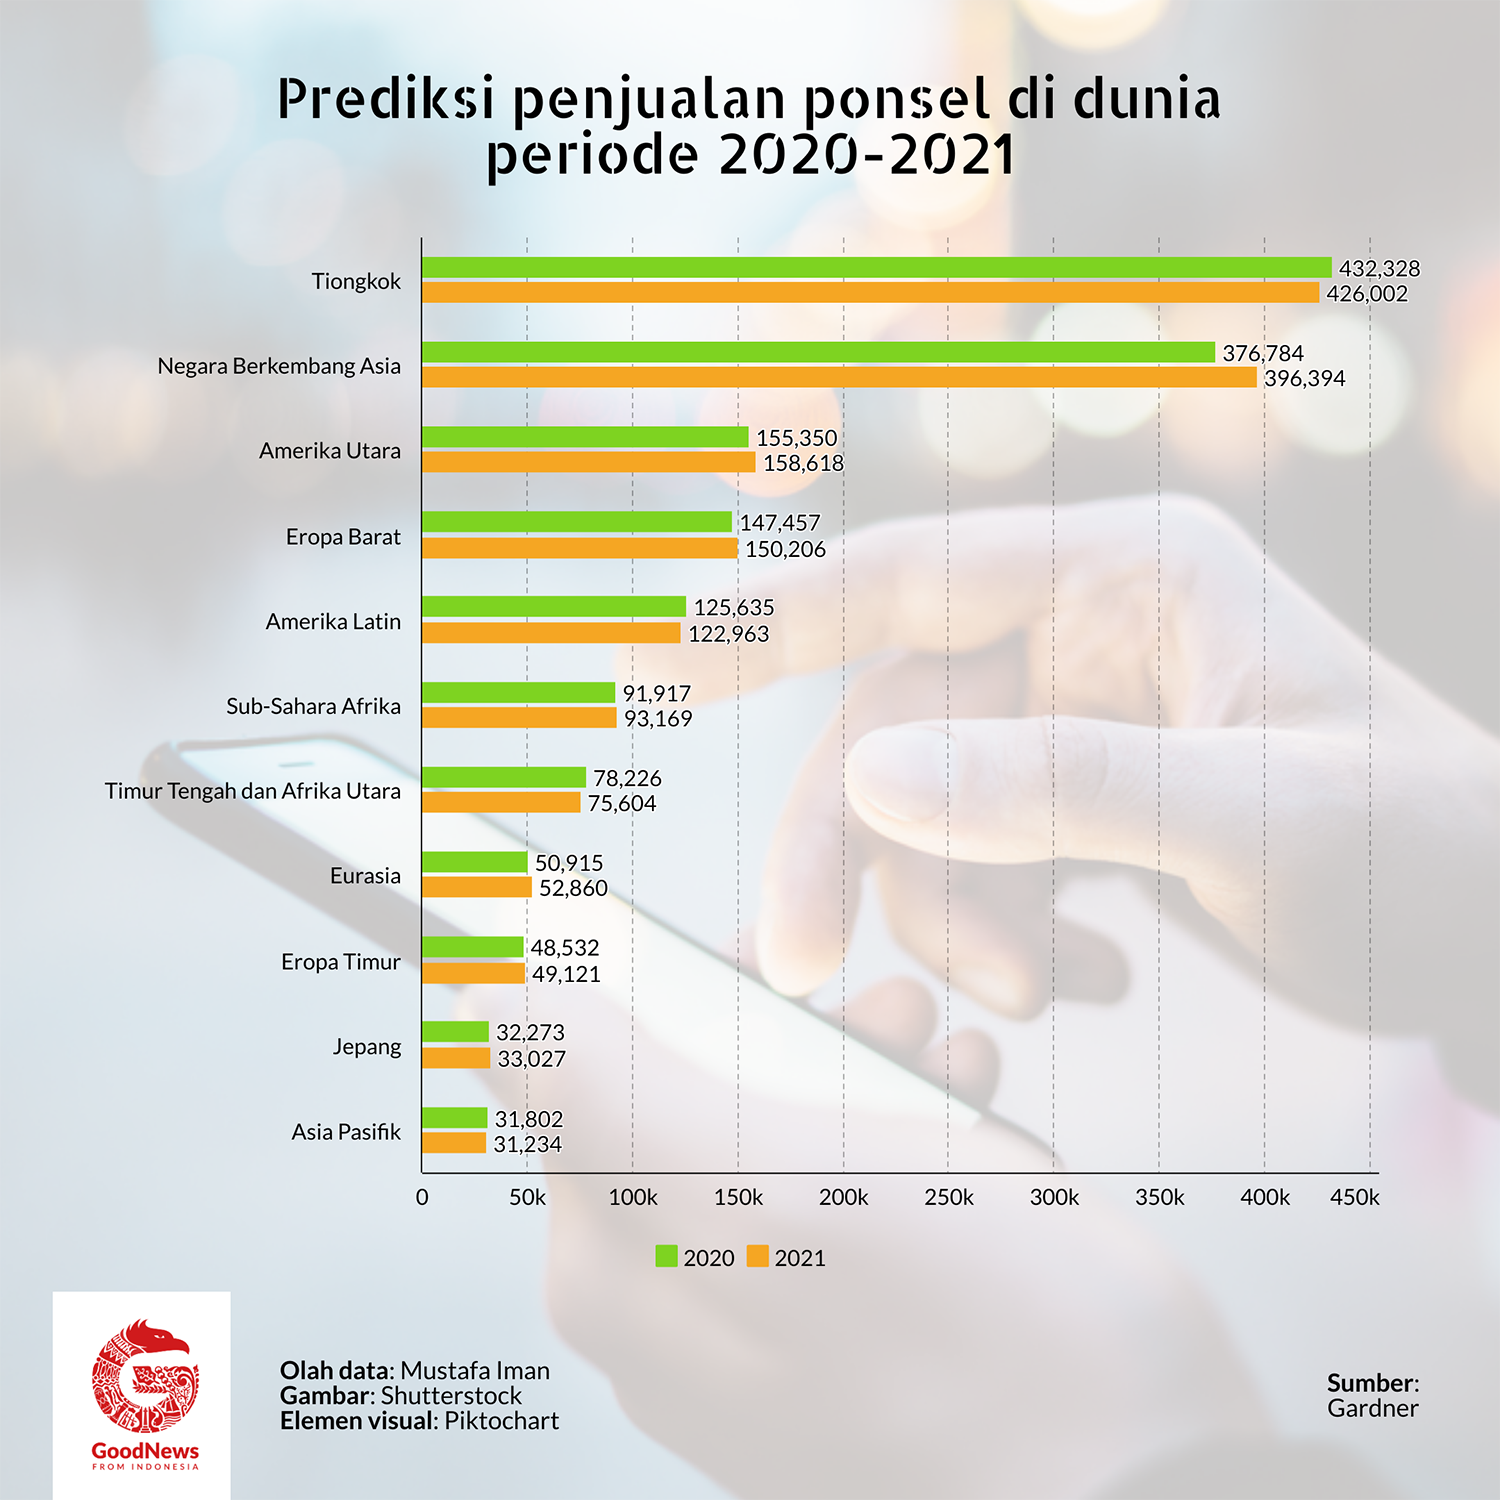 Prediksi penjualan ponsel di dunia 2020-2021